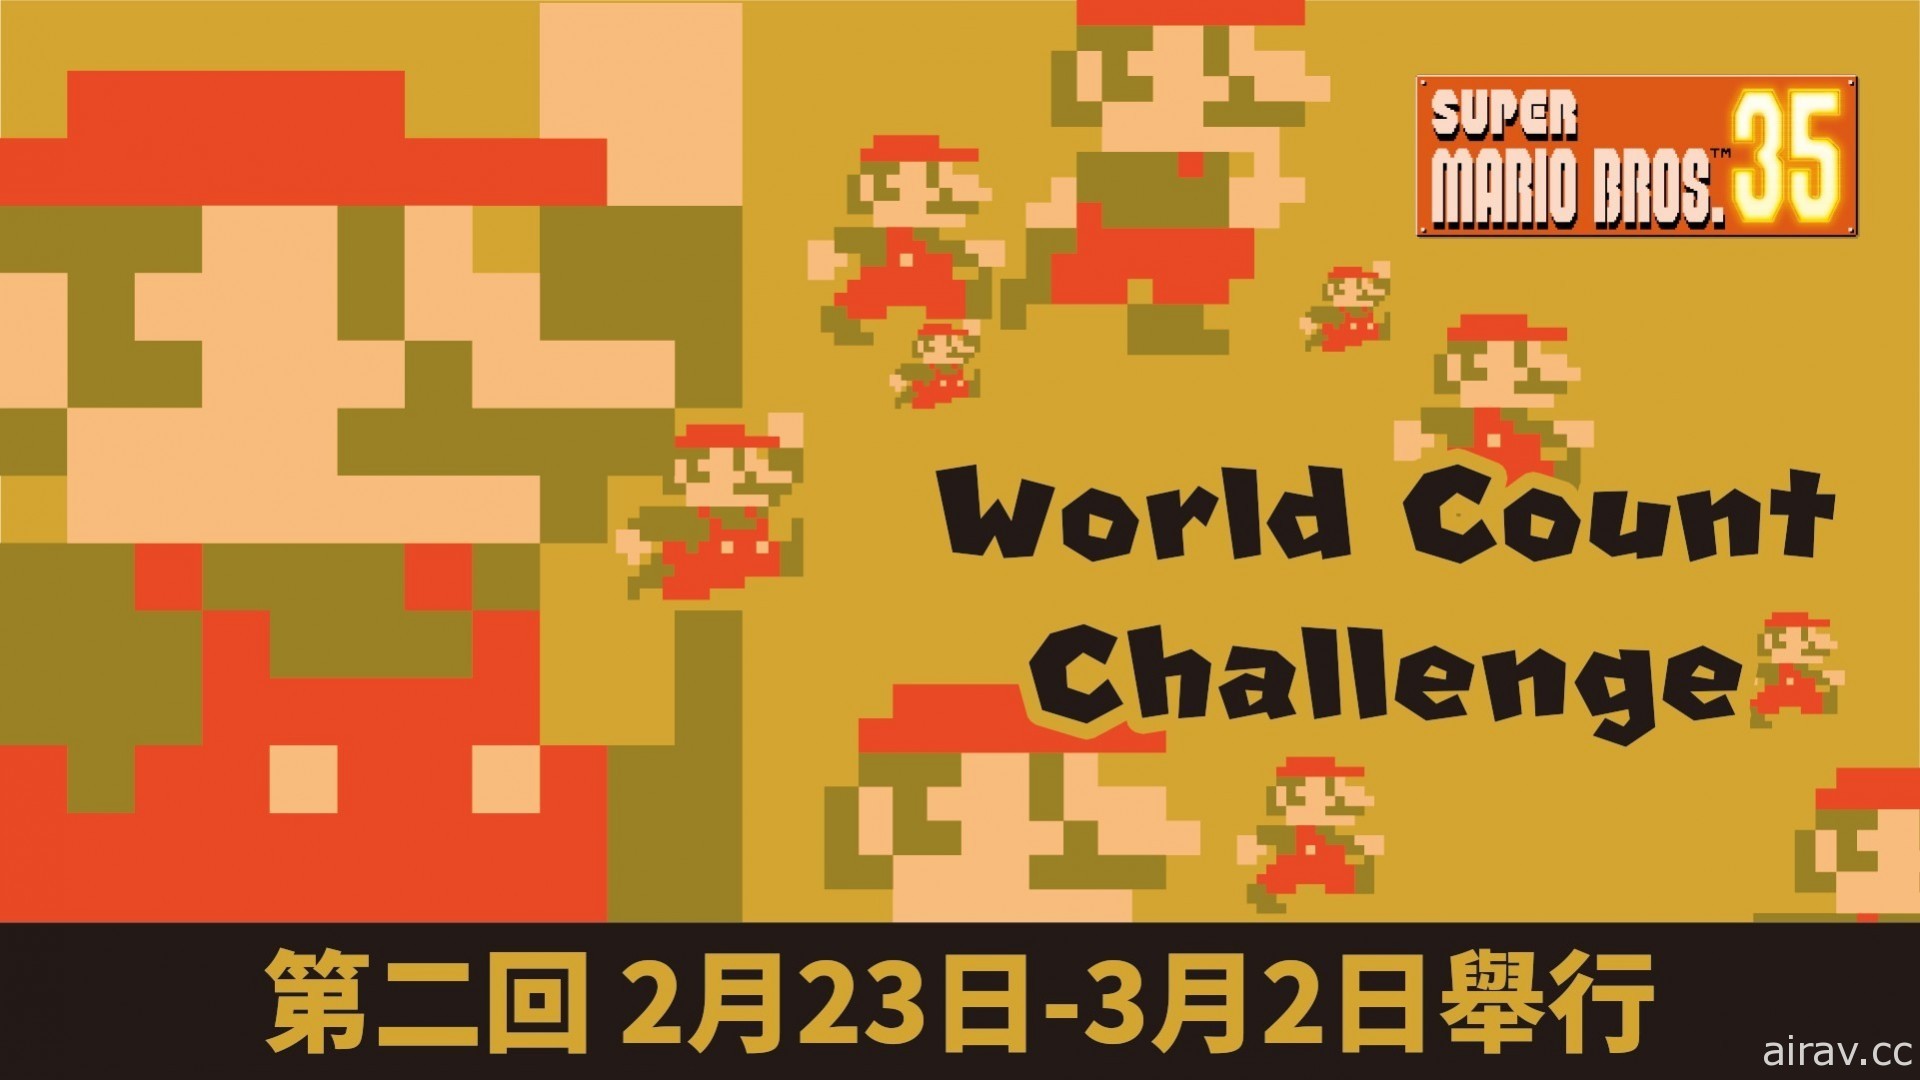 一起打倒 3.5 億隻栗寶寶《超級瑪利歐兄弟 35》舉行第二回 World Count Challenge 活動